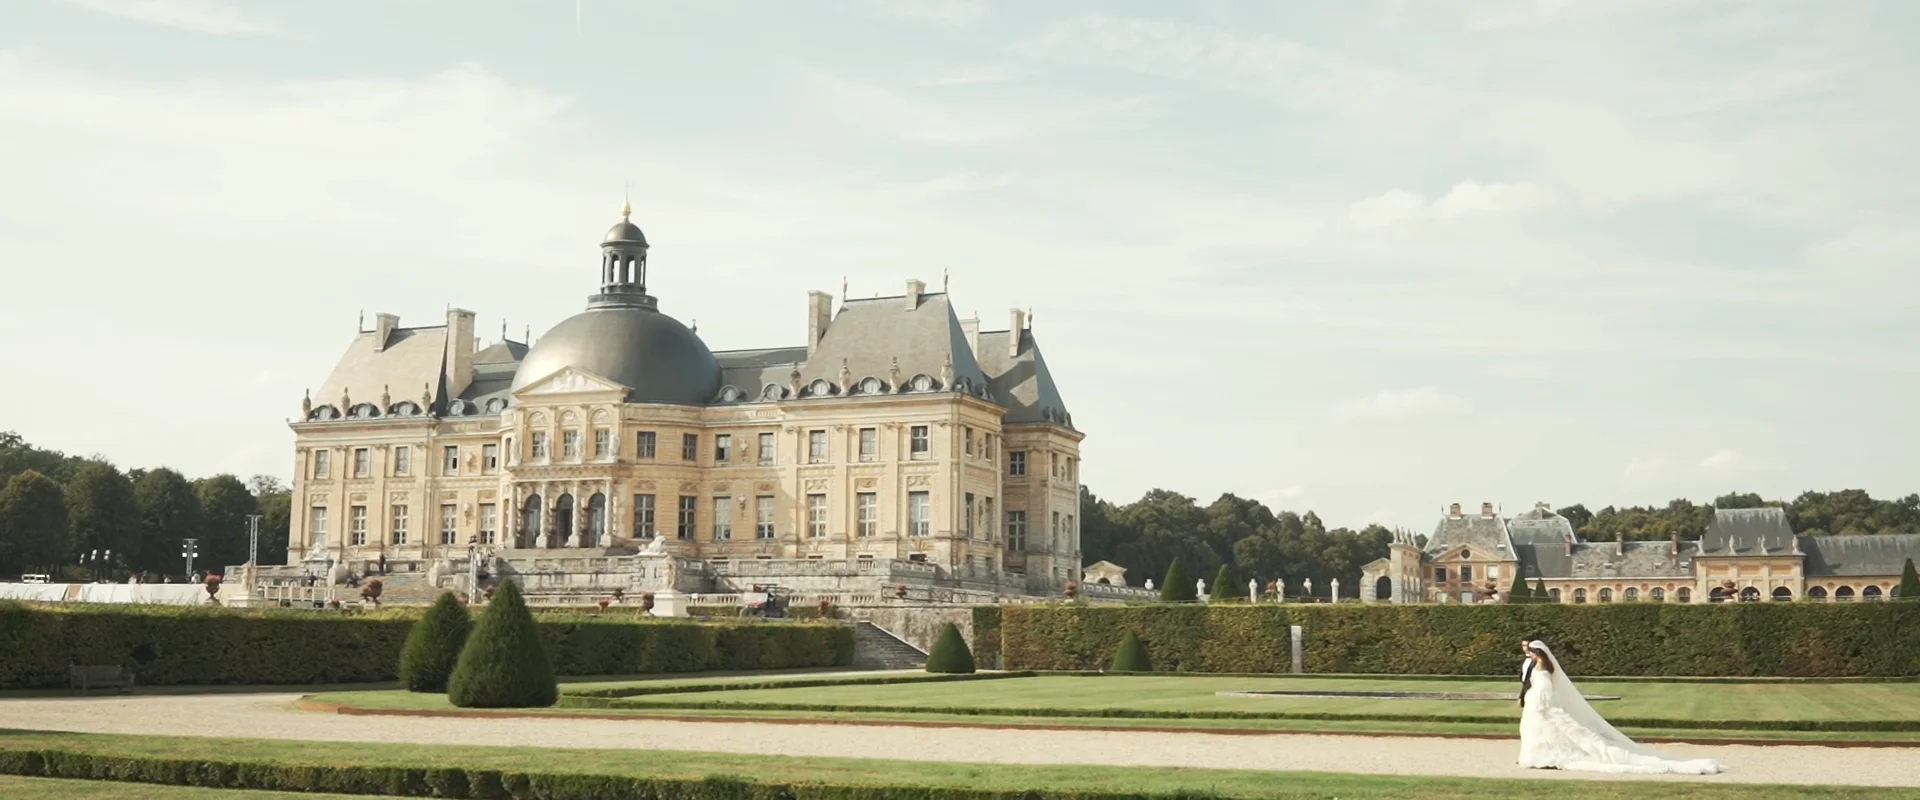 Your Royal Wedding At Chateau de Vaux le Vicomte - Audrey